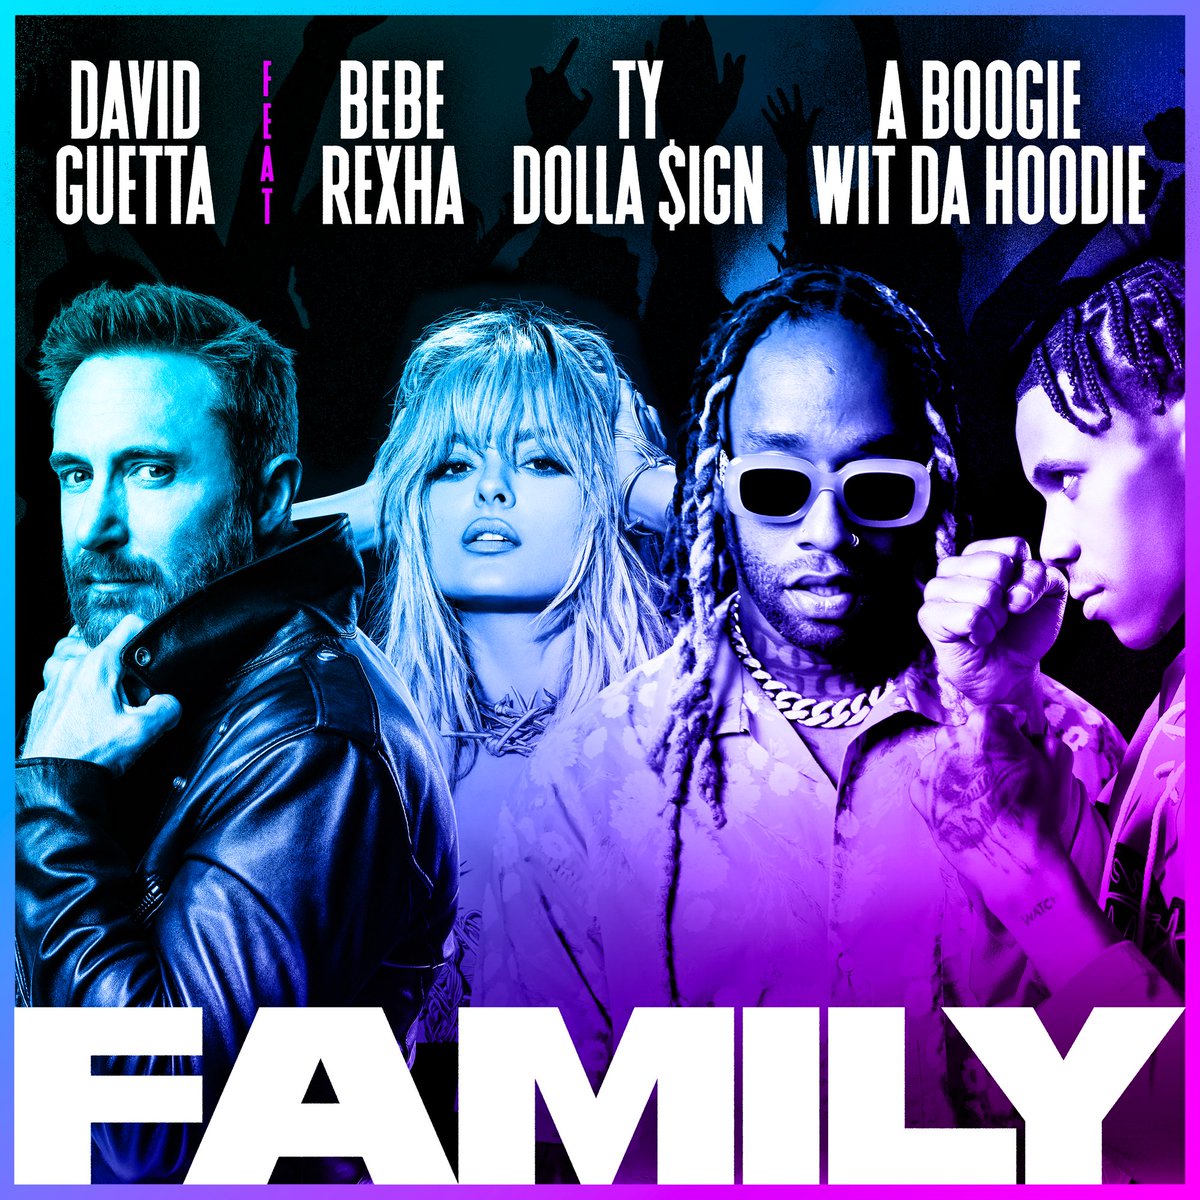 Add it to your playlist! Bebe Rexha și David Guetta au lansat „Family”, piesă la care a lucrat și un român